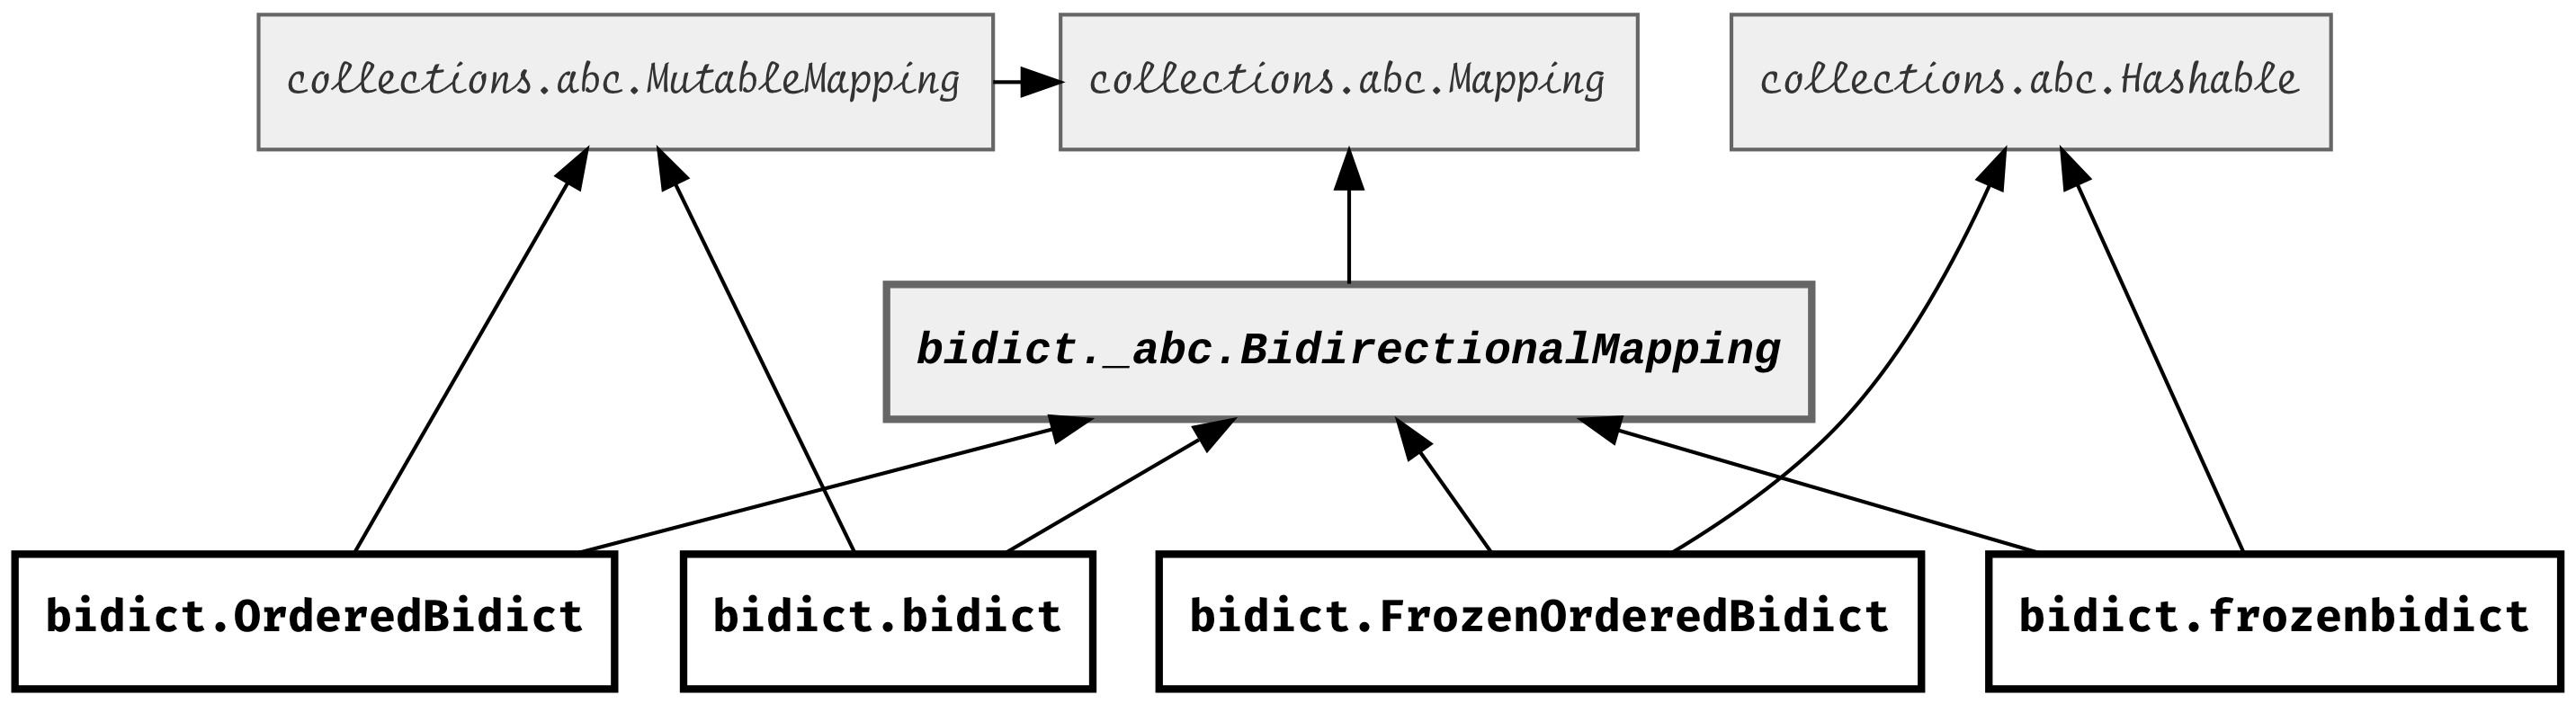 bidict types diagram